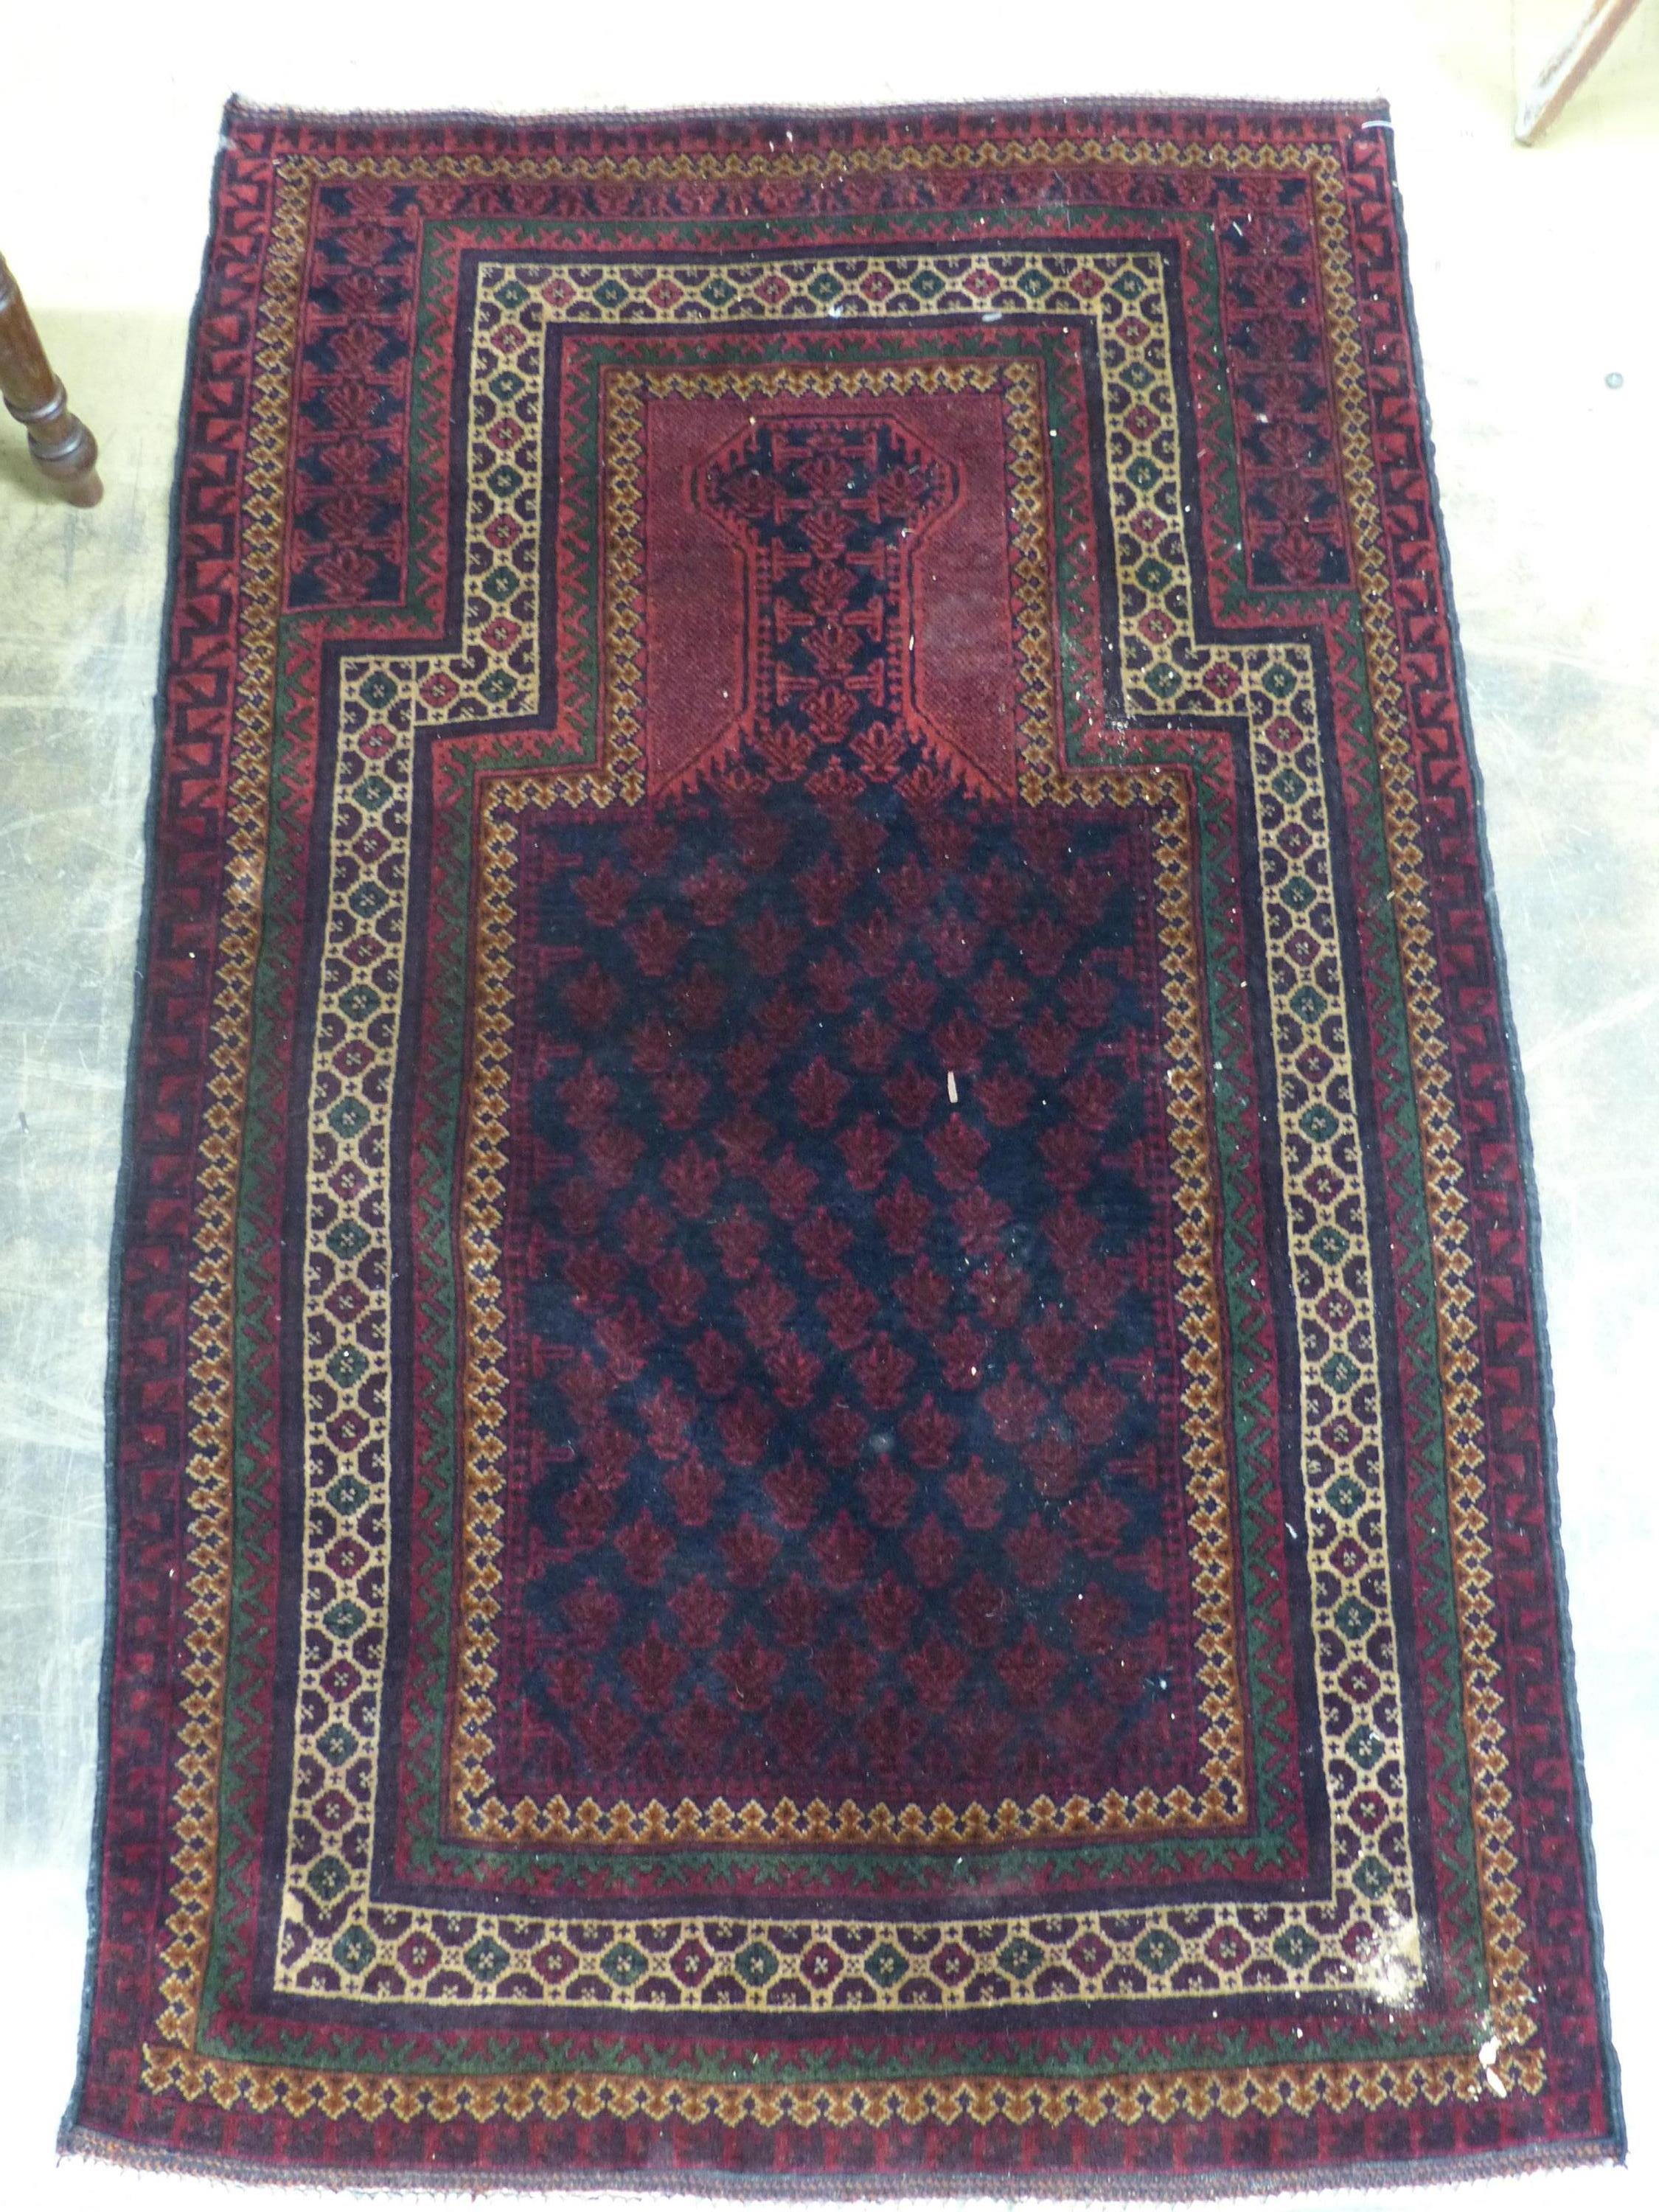 A Belouch red ground prayer rug, 146 x 90cm